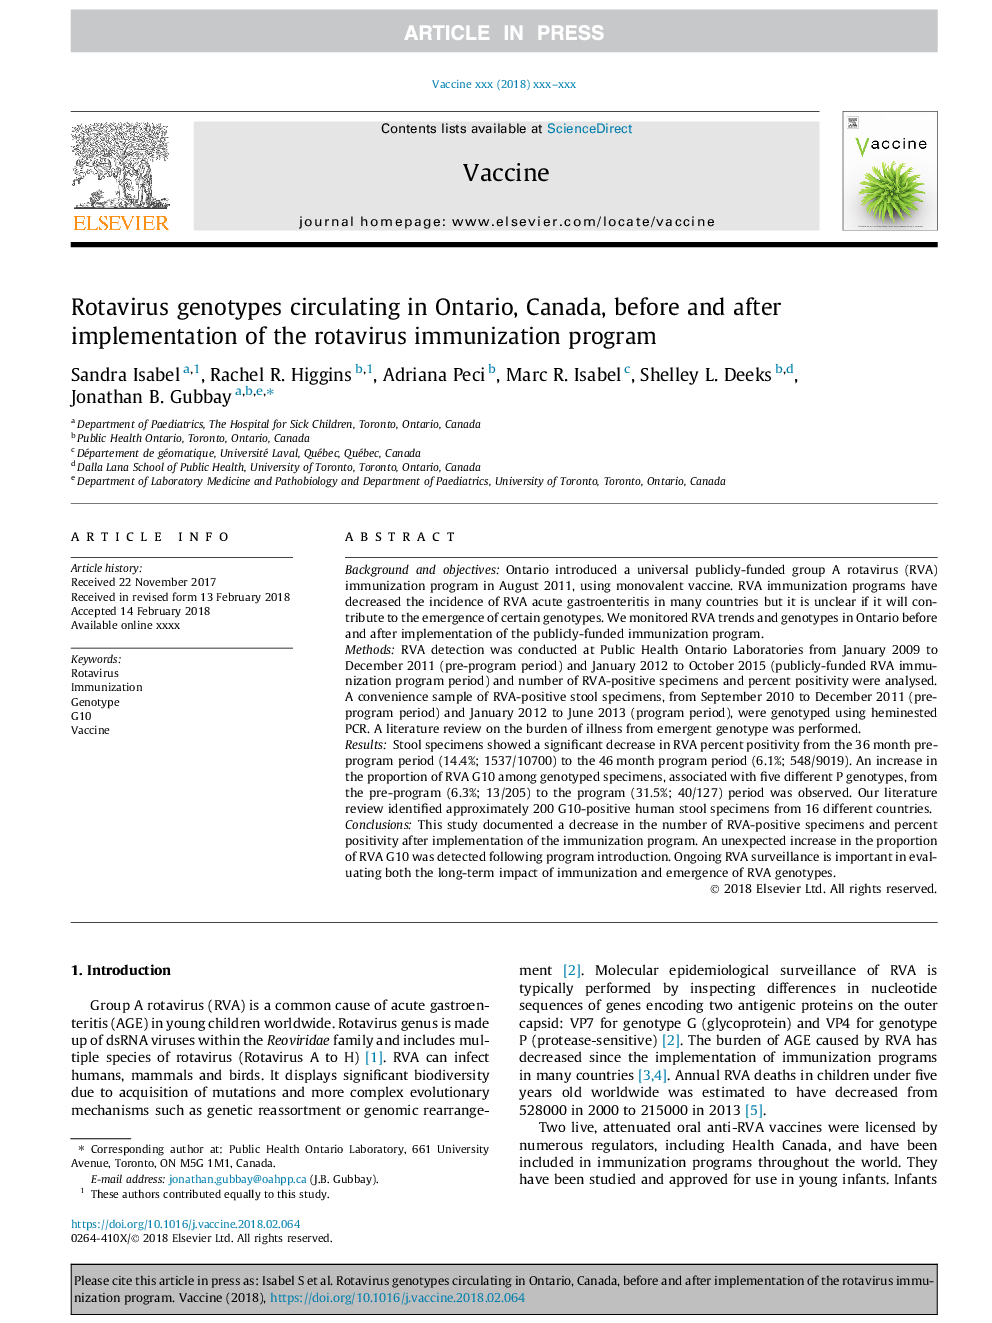 ژنوتیپ های روتا ویروس در انتاریو، کانادا، قبل و بعد از اجرای برنامه ایمن سازی روتاویروس 